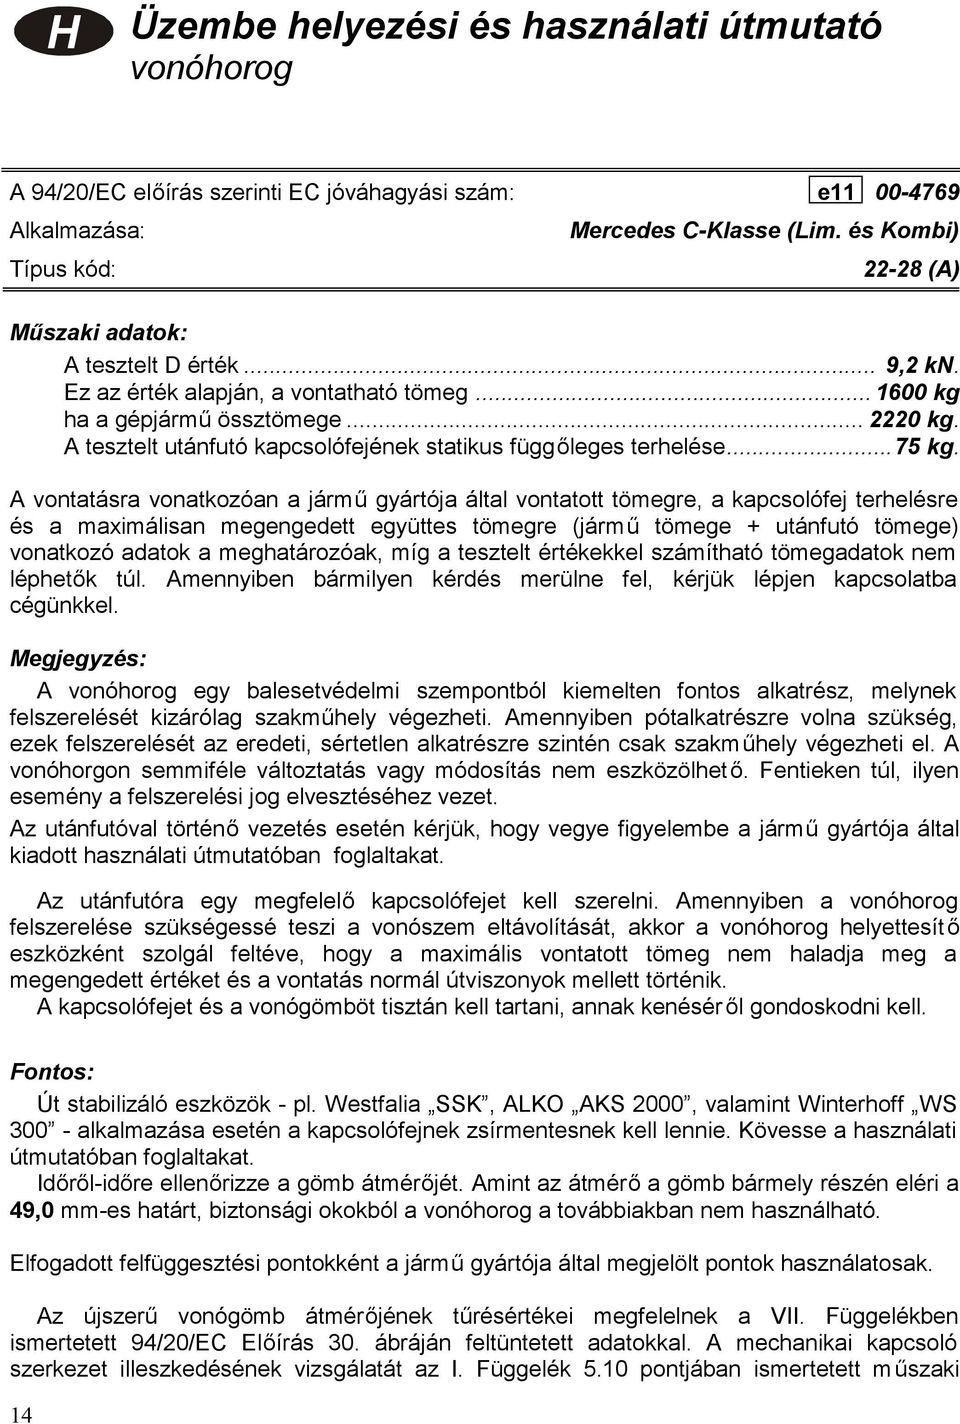 Mercedes C-Klasse 2000/6- (Lim. and Kombi) - PDF Free Download